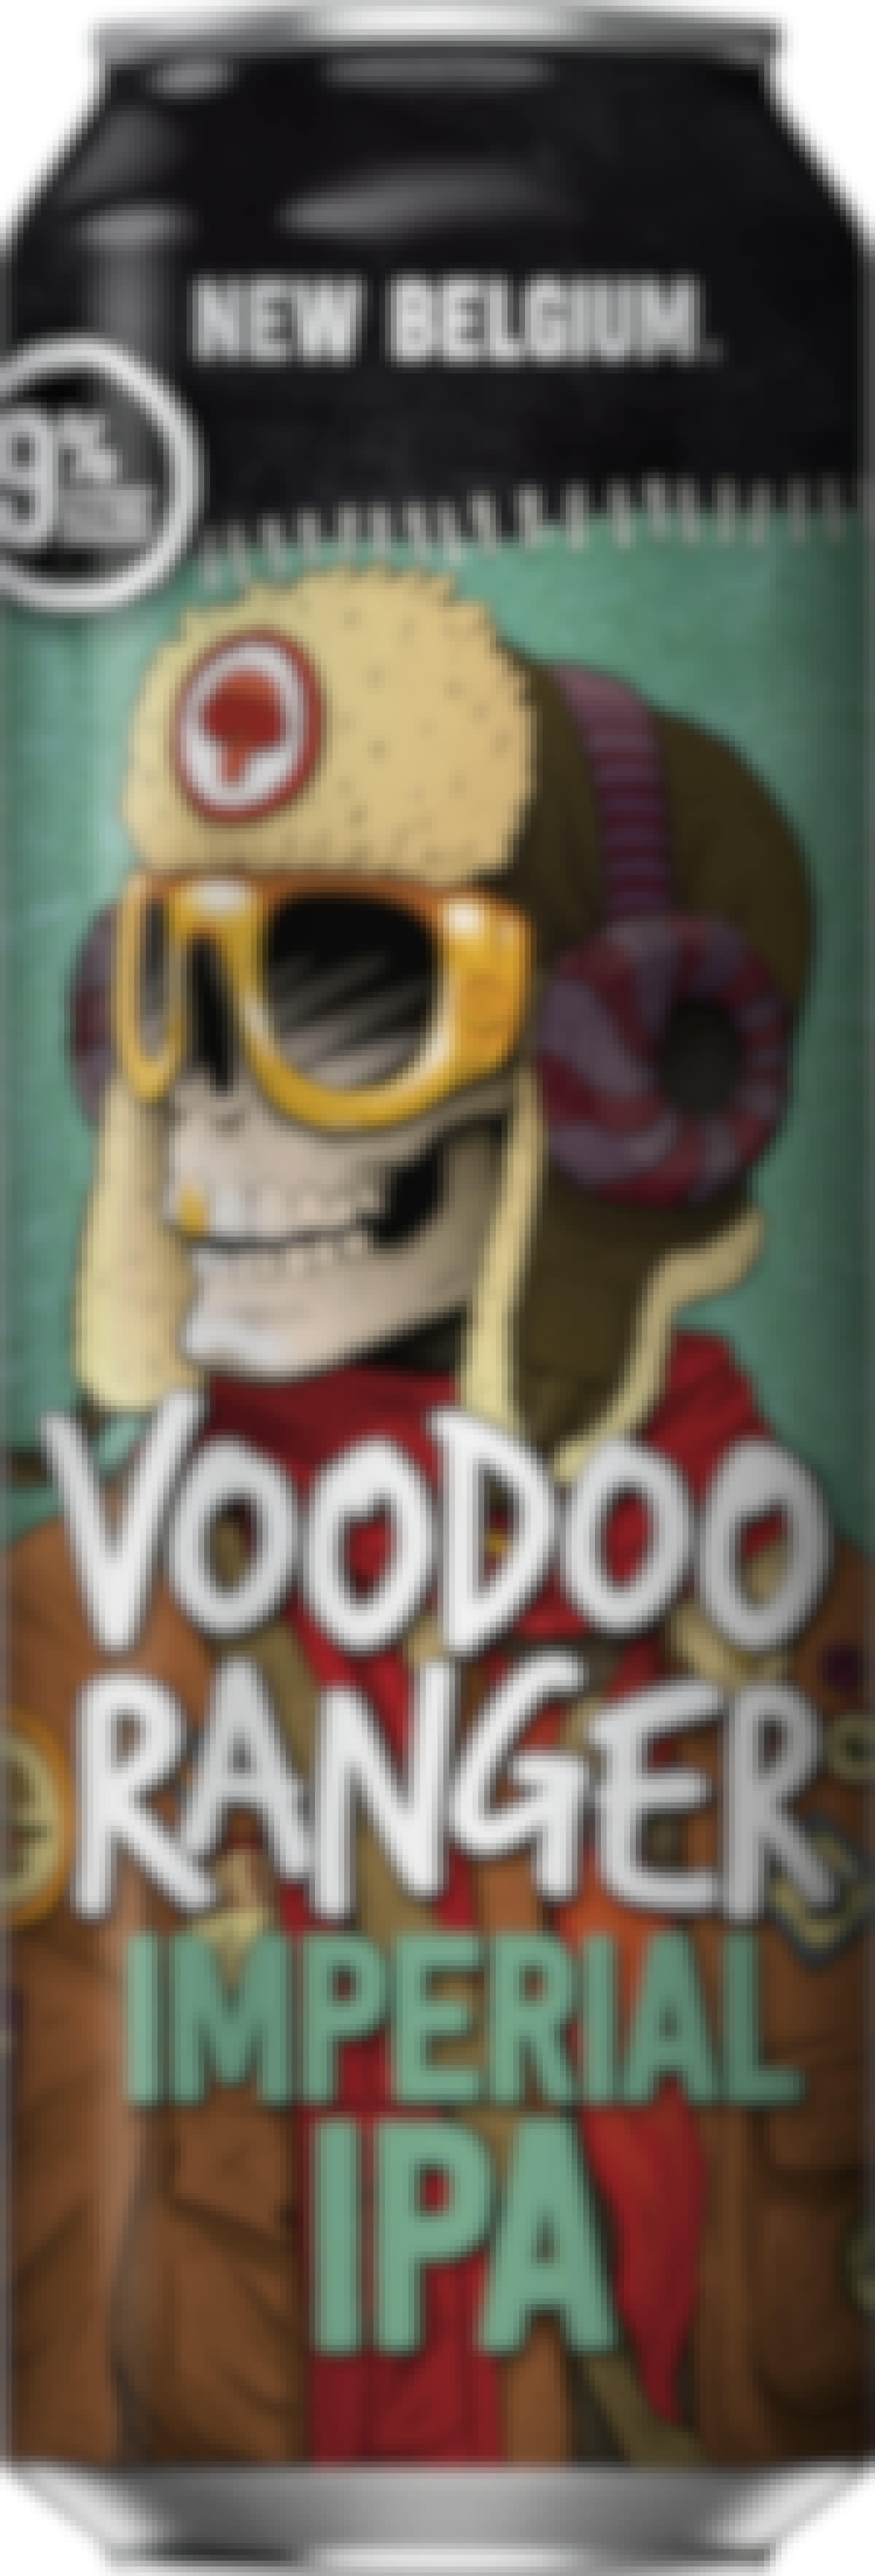 New Belgium Voodoo Ranger Imperial IPA 20 oz. Can